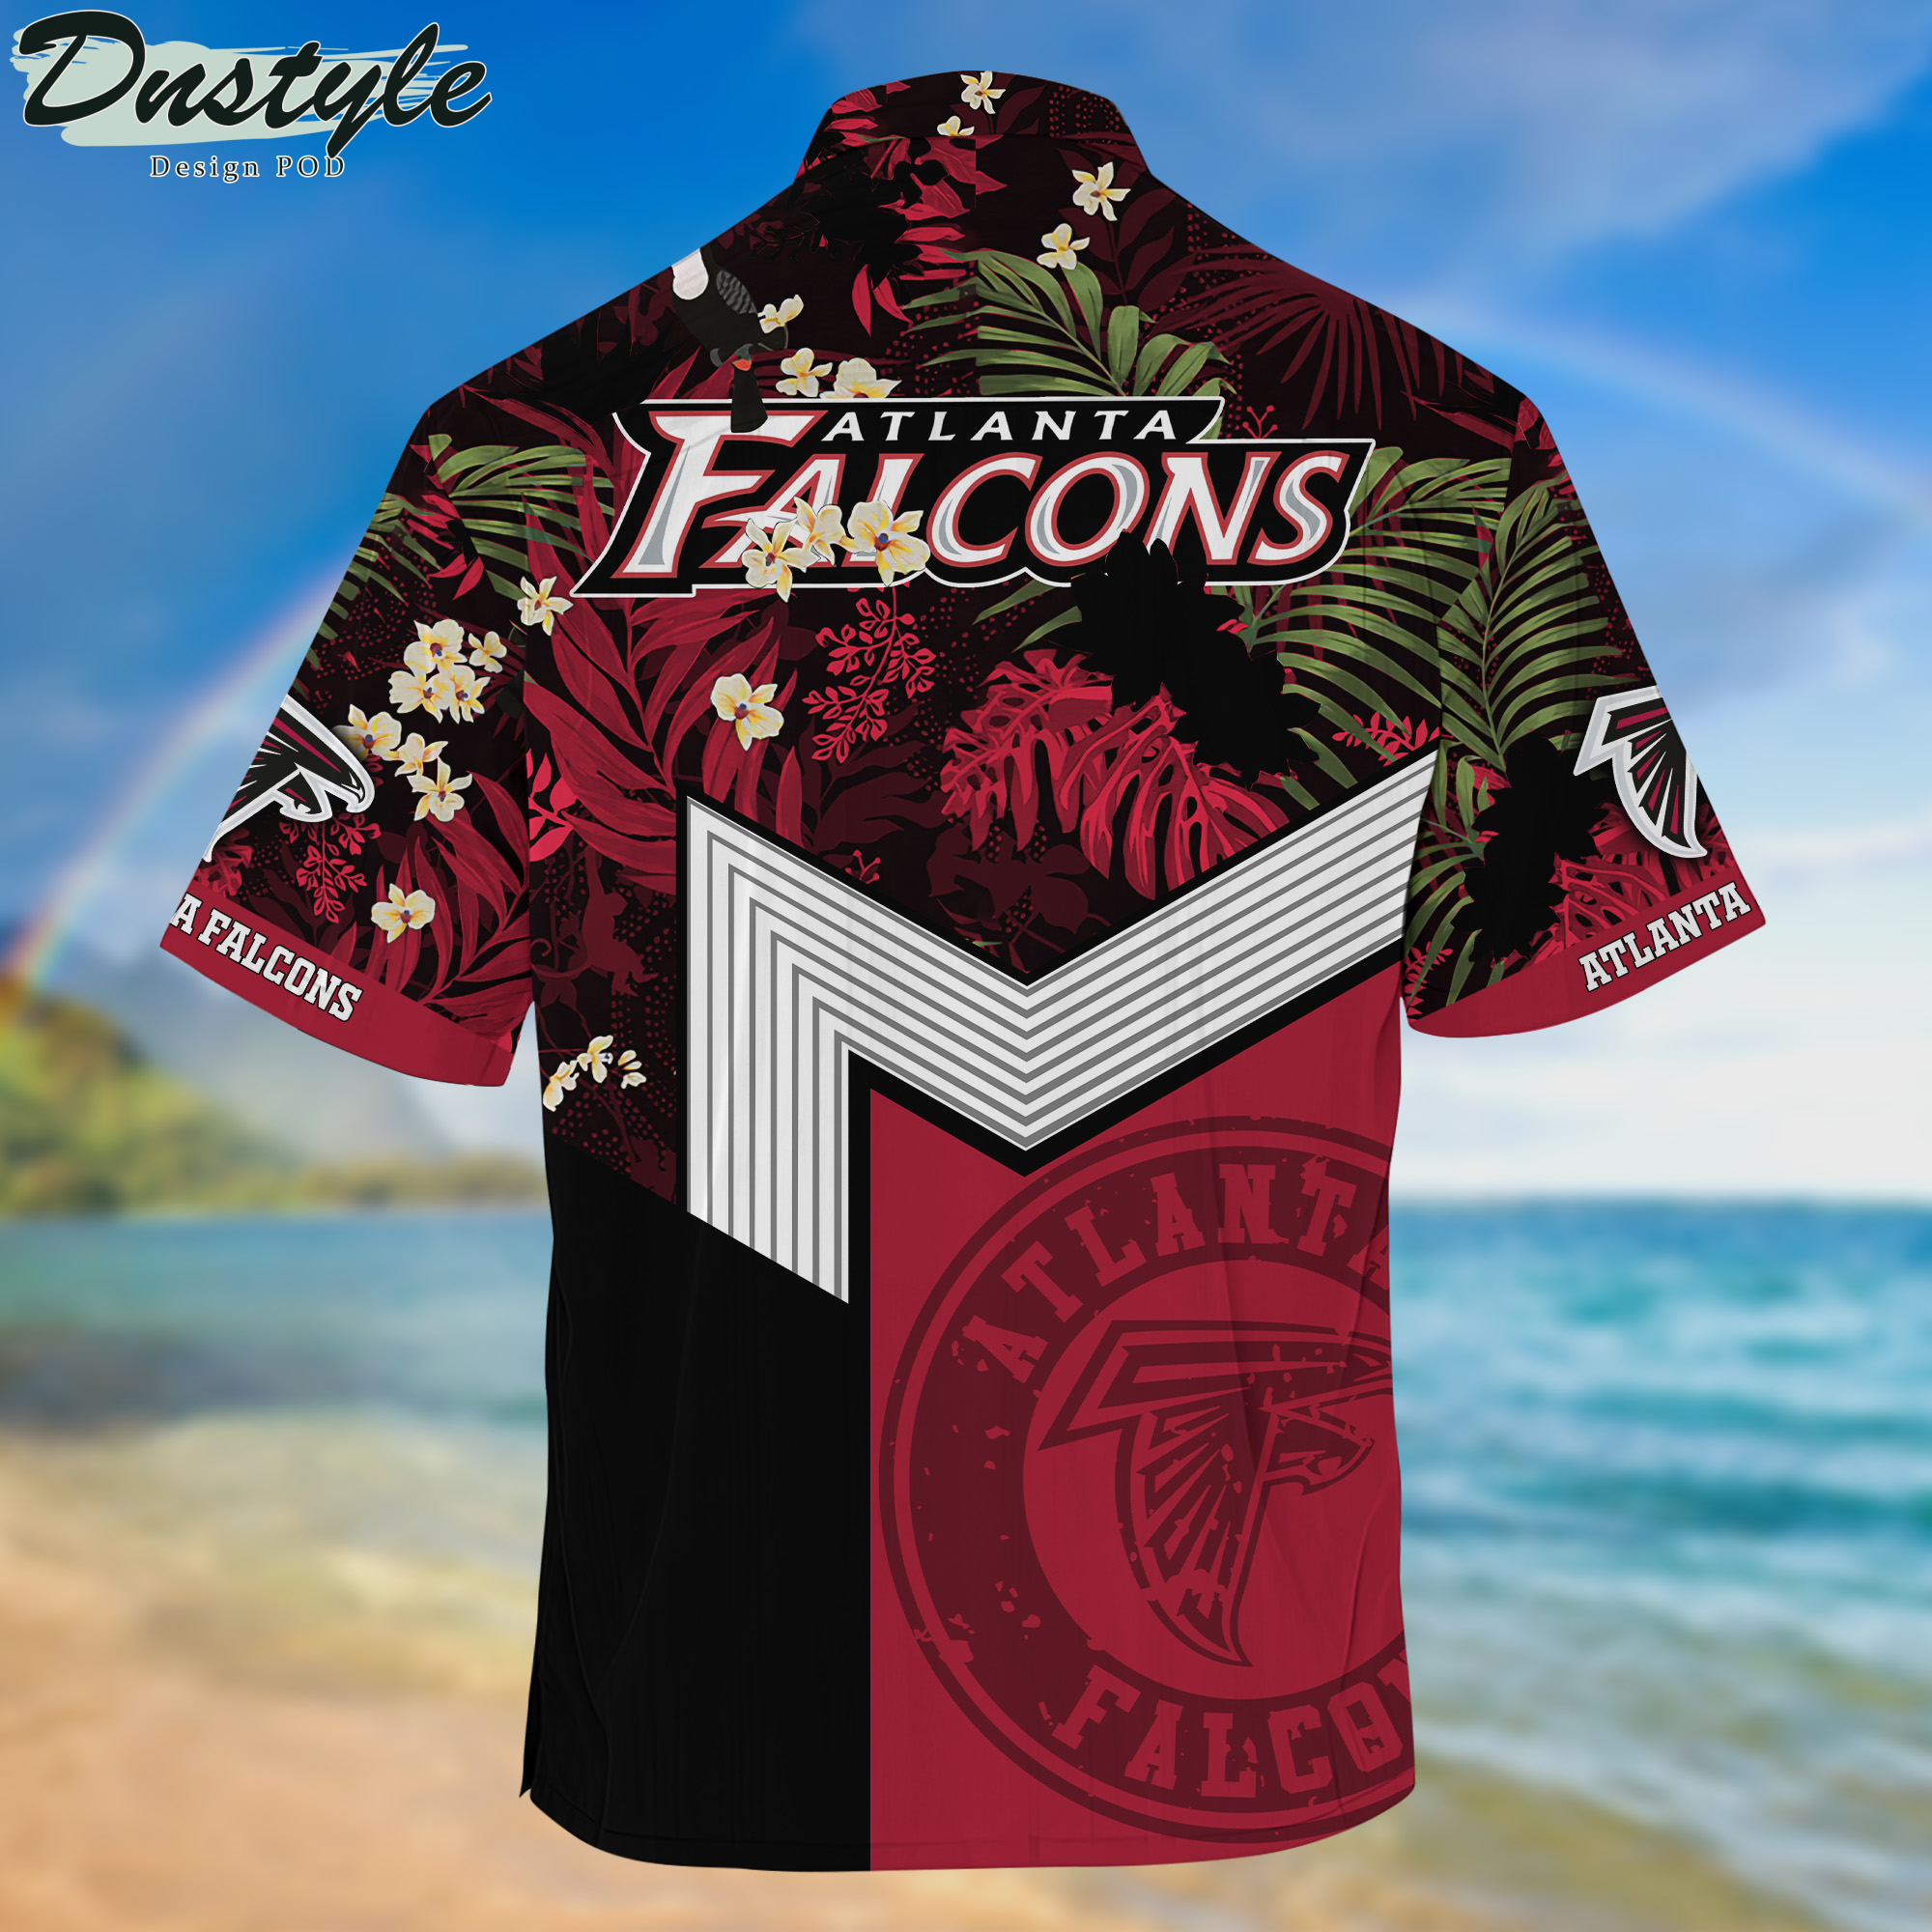 Atlanta Falcons Hawaii Shirt And Shorts New Collection